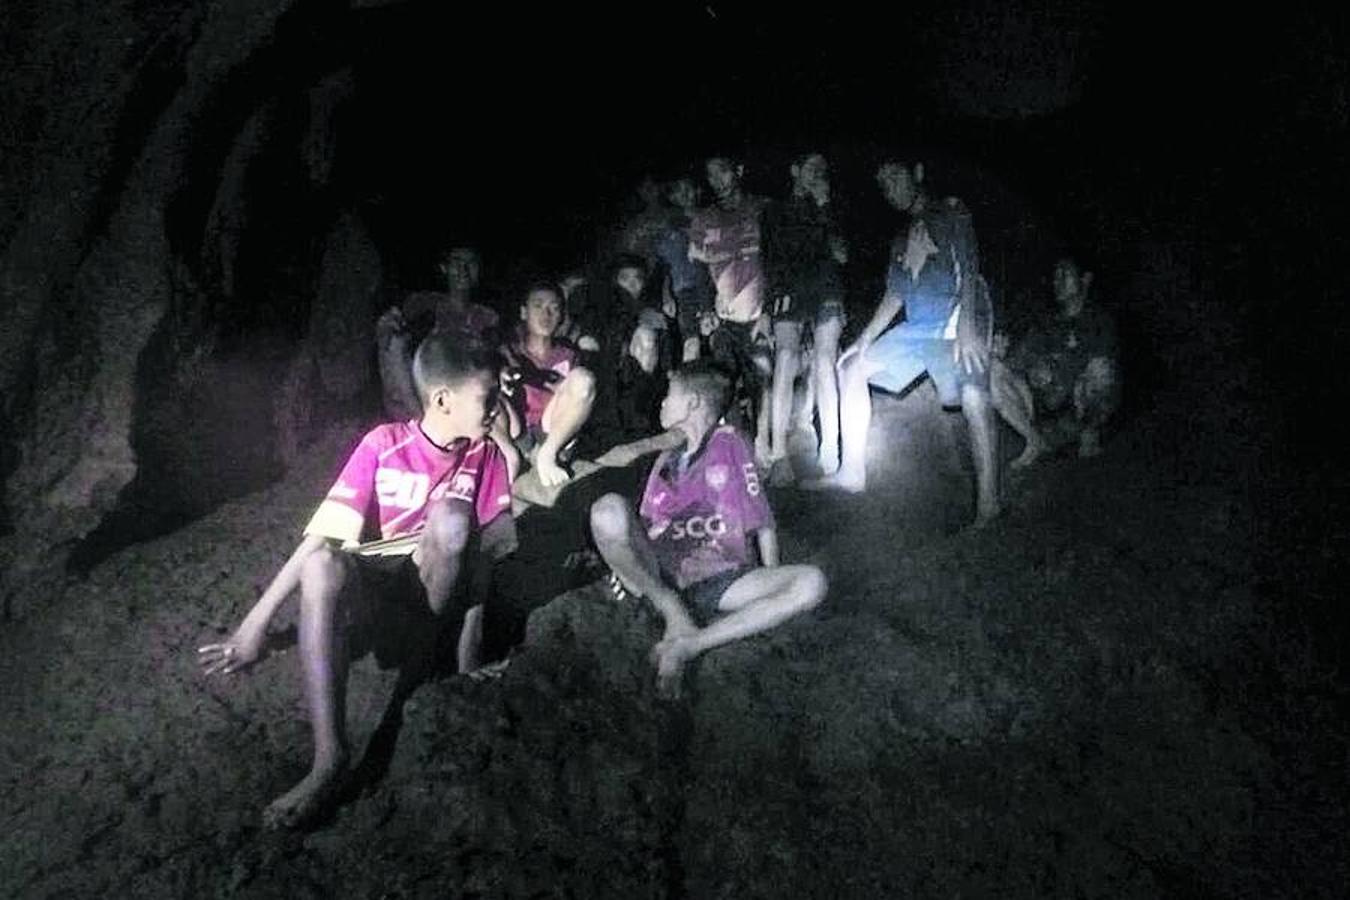 Después de confirmar que están vivos, los equipos de rescate se enfrentan a una tarea todavía más complicada: extraer al entrenador y a los doce niños tailandeses que integran el equipo de fútbol Jabalí Salvaje de la gigantesca cueva en la que quedaron atrapados el pasado día 23.